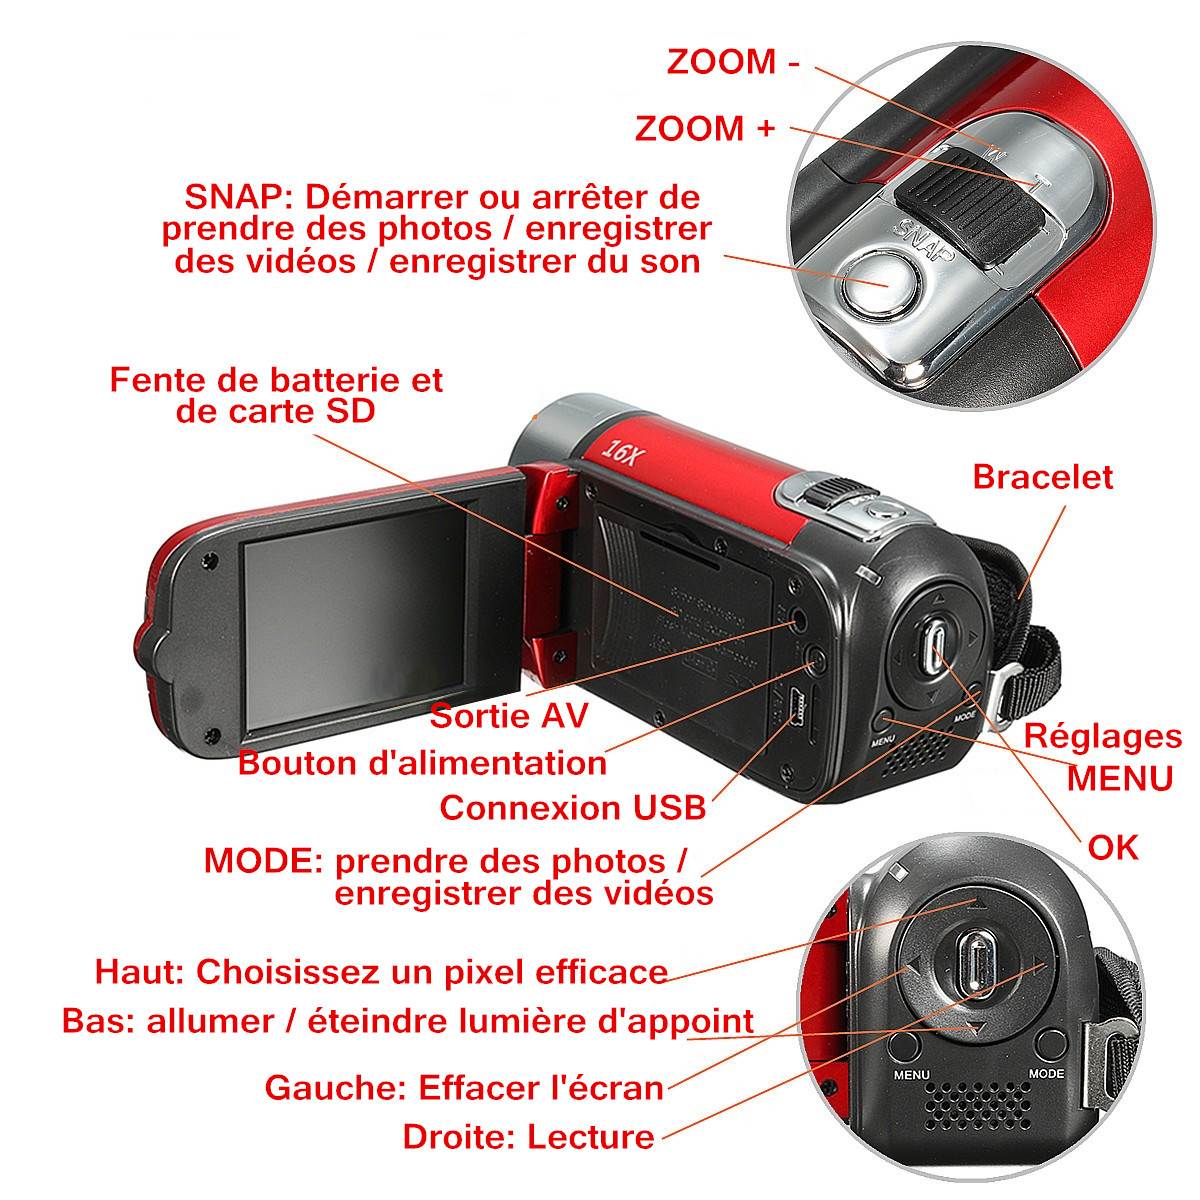 มุมมองเพิ่มเติมของสินค้า ดิจิตอลกล้องวิดีโอ กล้องวีดีโอกล้องถ่ายรูป ระบบตัวเลขความละเอียดสูงกล้องถ่ายวิดีโอกล้อง DV 16X Video Camera 16 Million Pixels HD 1080P Digitale Video Camcorder DV 16MP 2.7'' LCD Screen Toccare Schermo 16X Zoom Camera